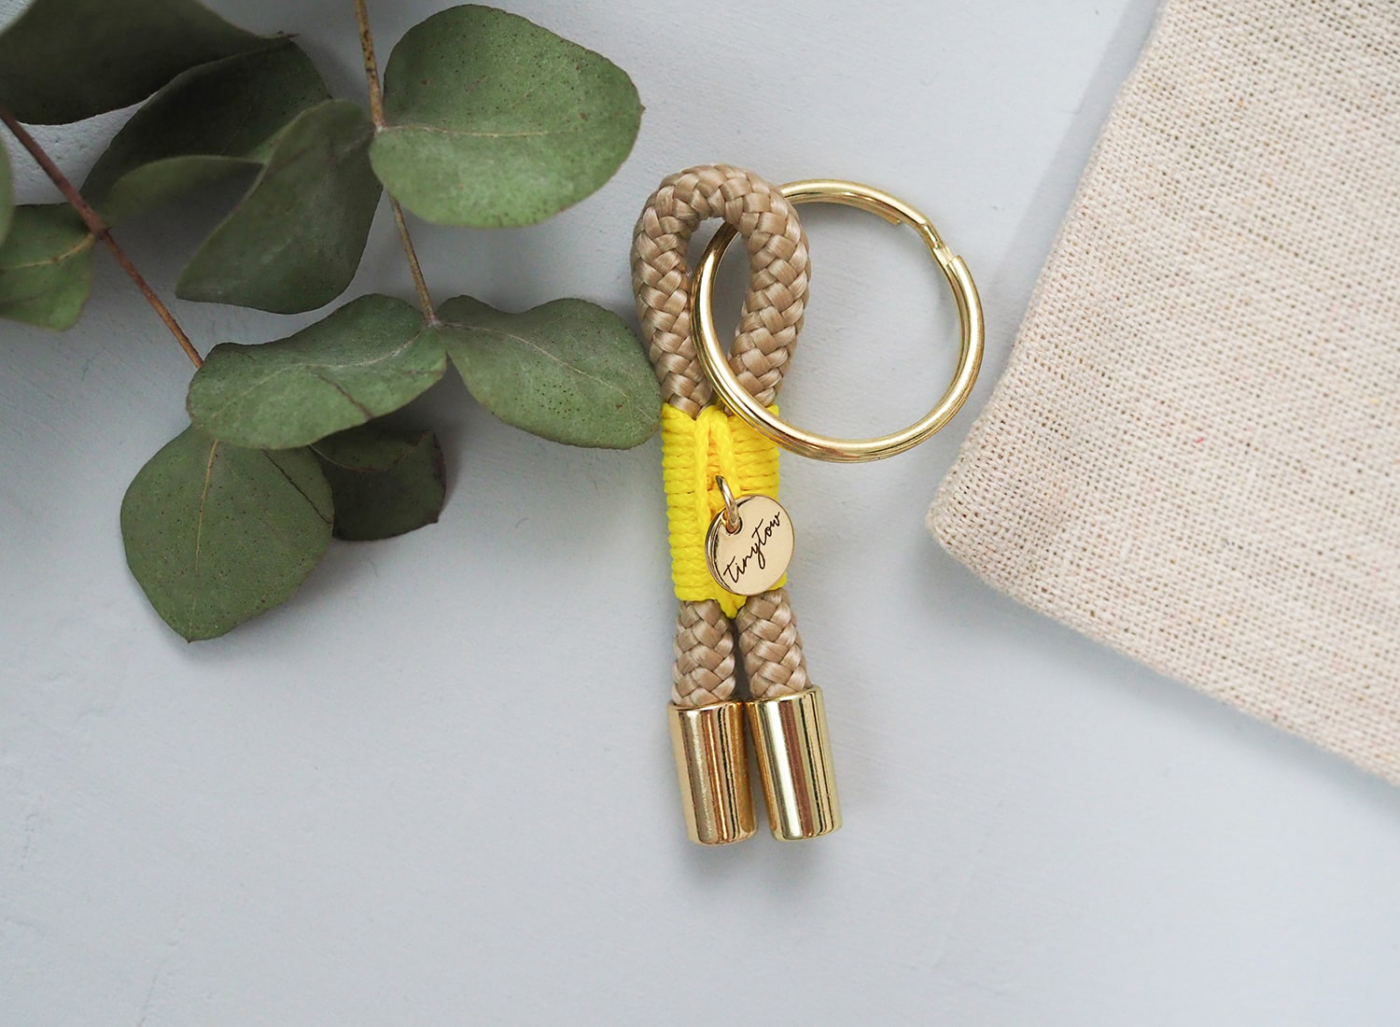 Schlüsselanhänger aus beigefarbenem Tau mit leuchtgelber Takelung, goldenem Schlüsselring und Baumwollsäckchen.